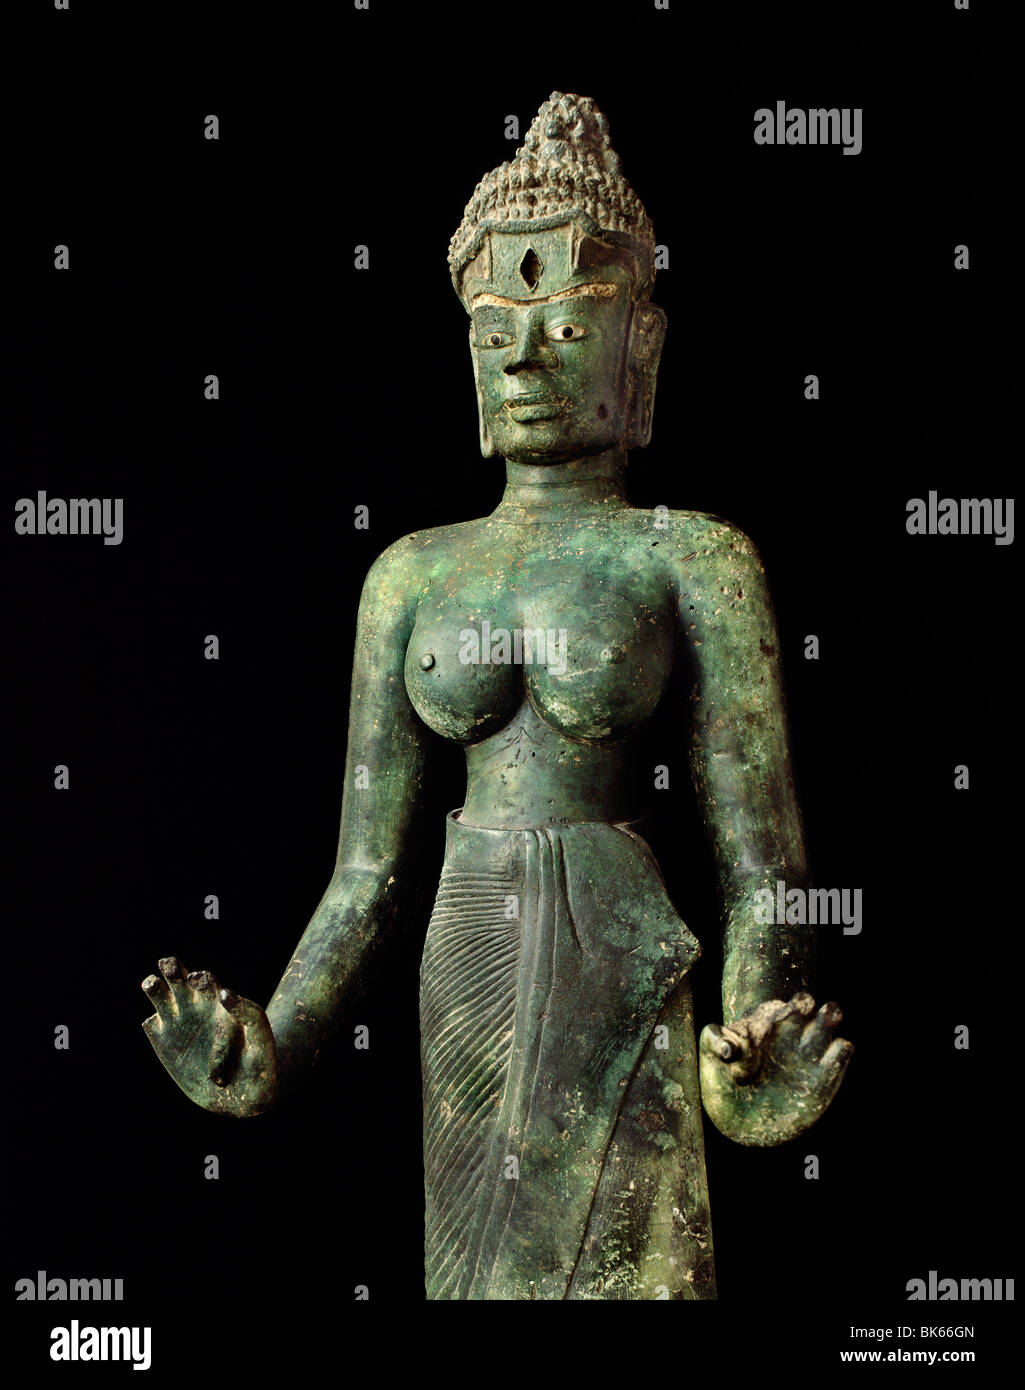 Tara en bronze style Dong Duong, découvert en 1978, le Cham'art, musée de Da nang, Vietnam, Indochine, Asie du Sud-Est, l'Asie Banque D'Images